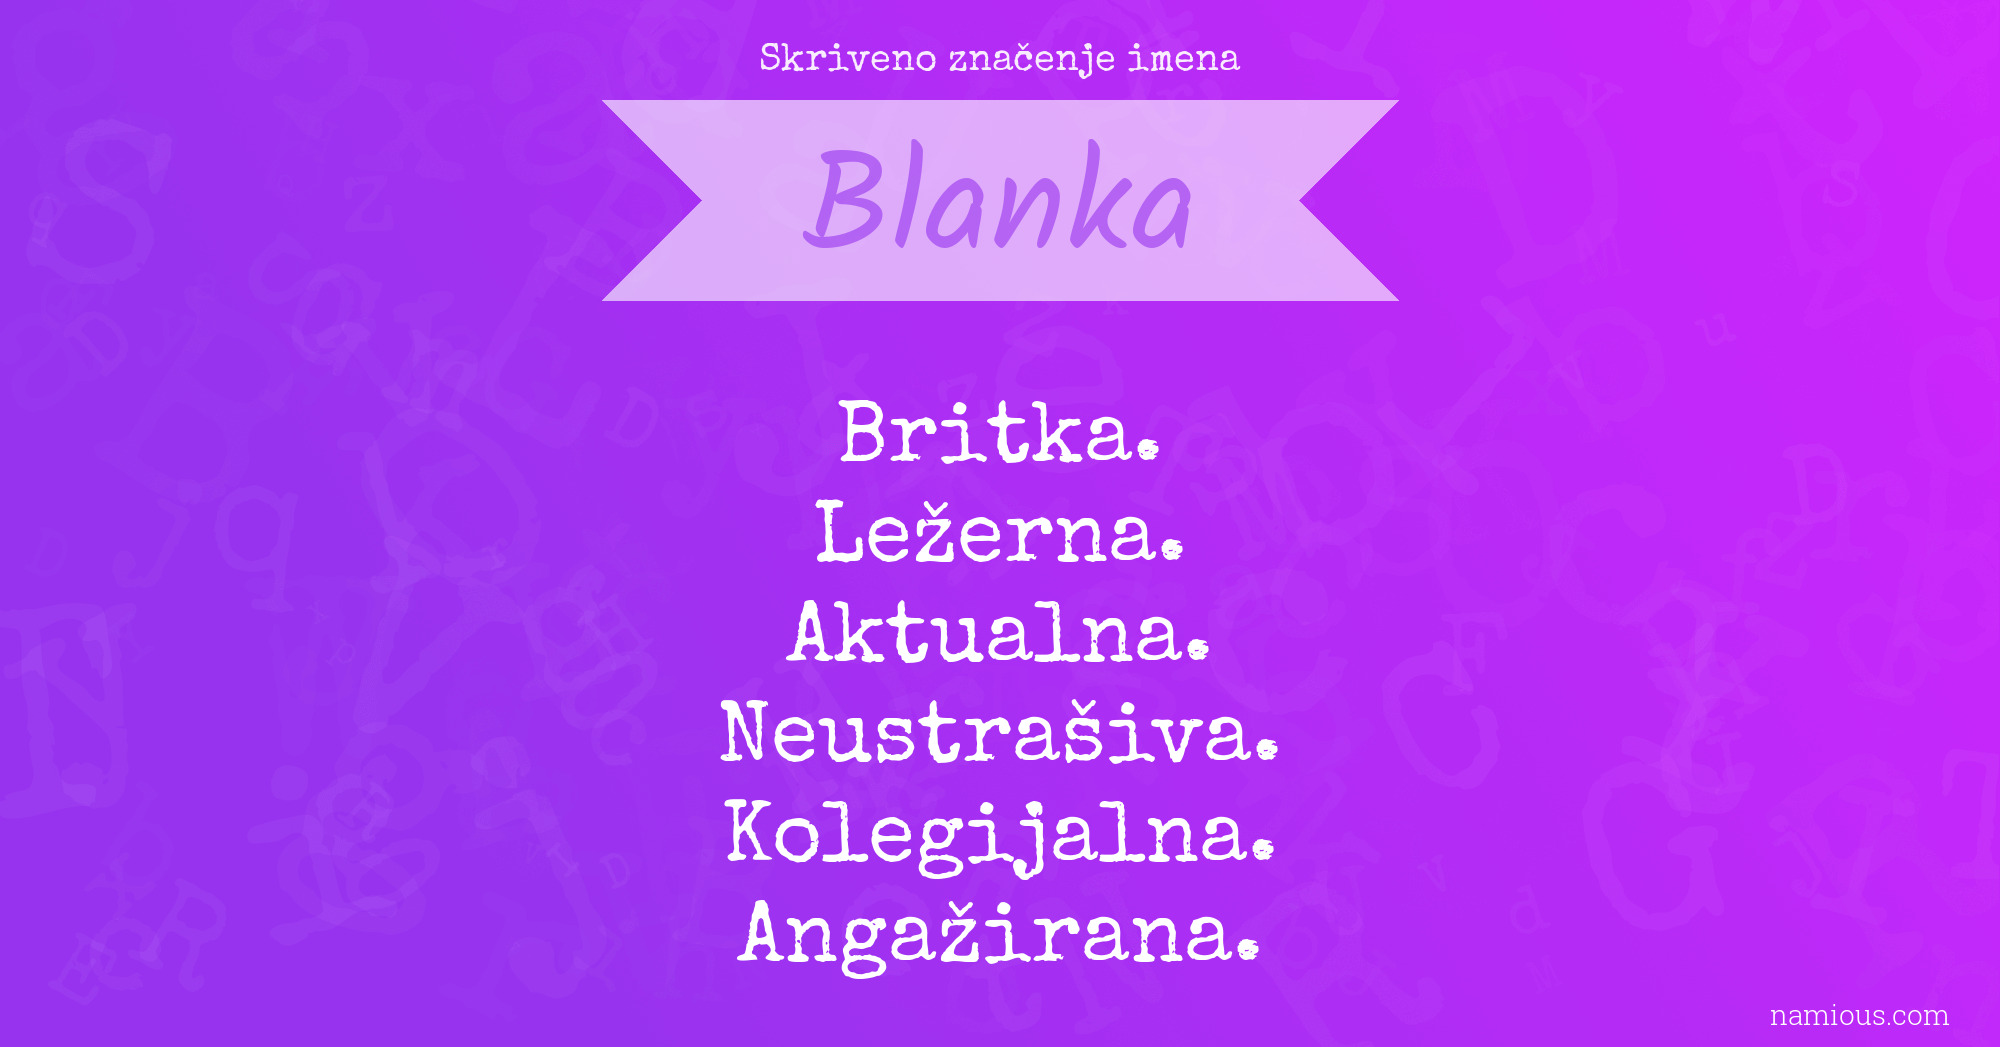 Skriveno značenje imena Blanka